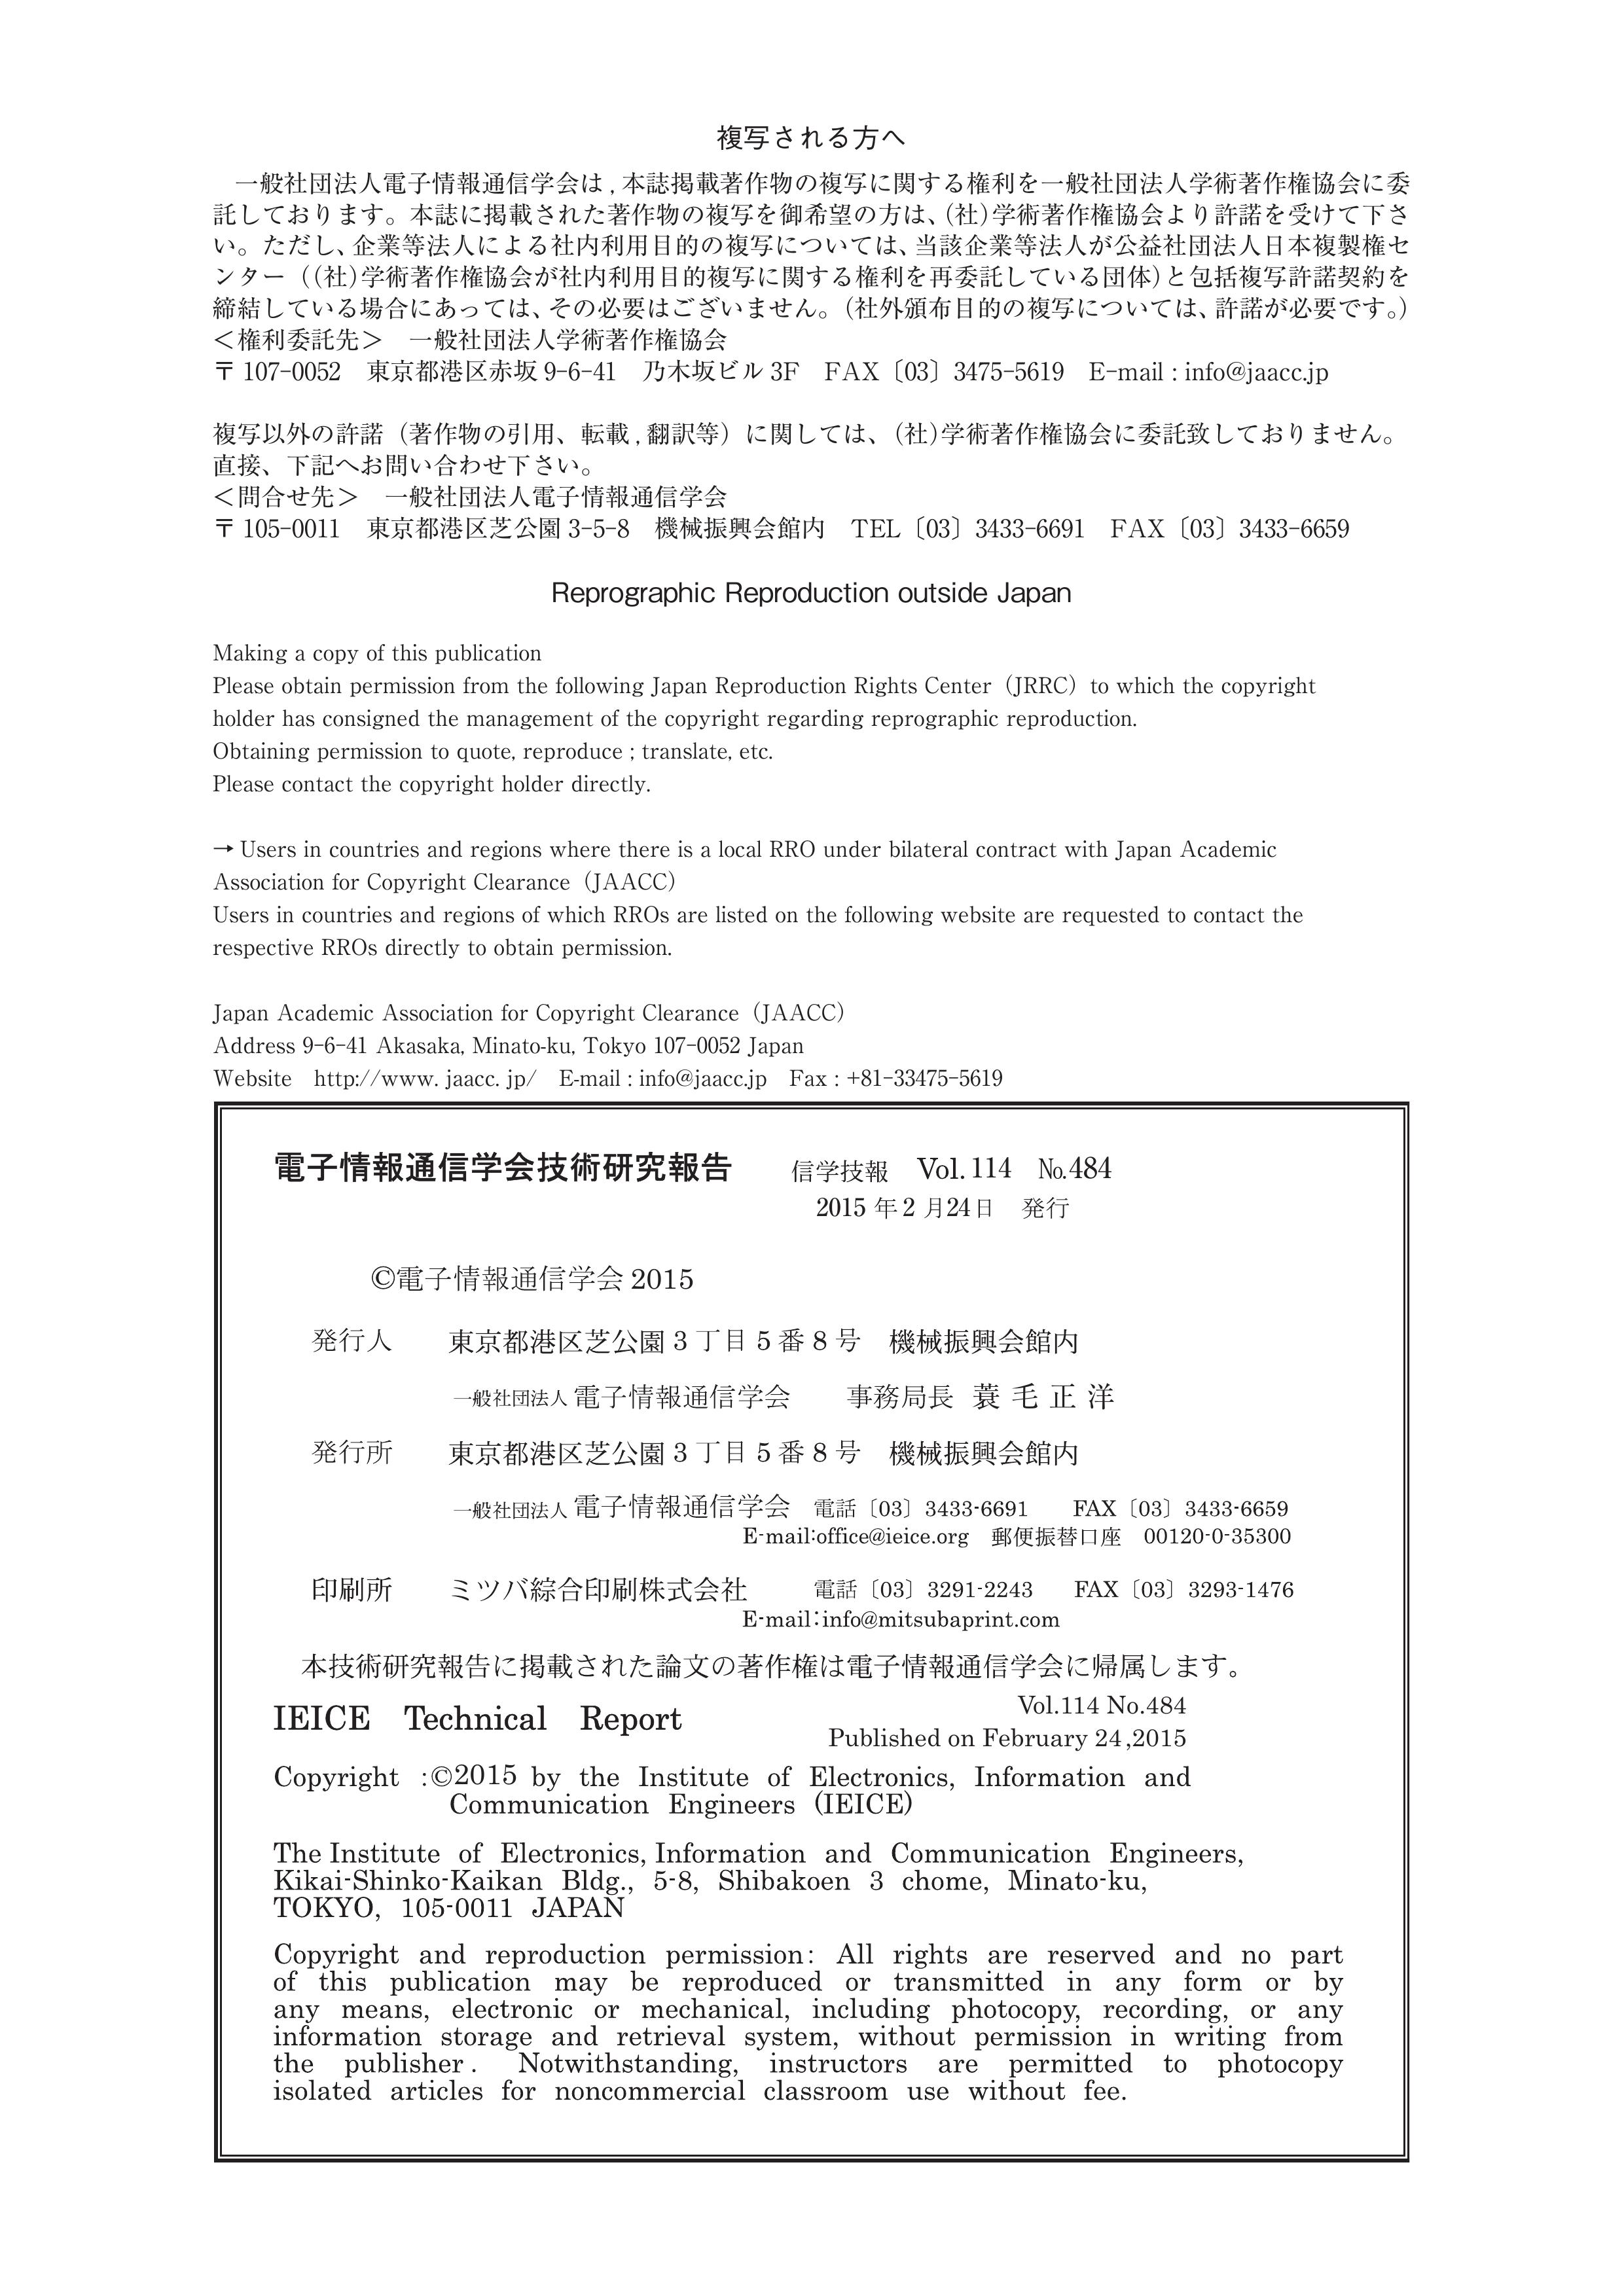 電子情報通信学会技術研究報告, vol 114, no 484, 2015